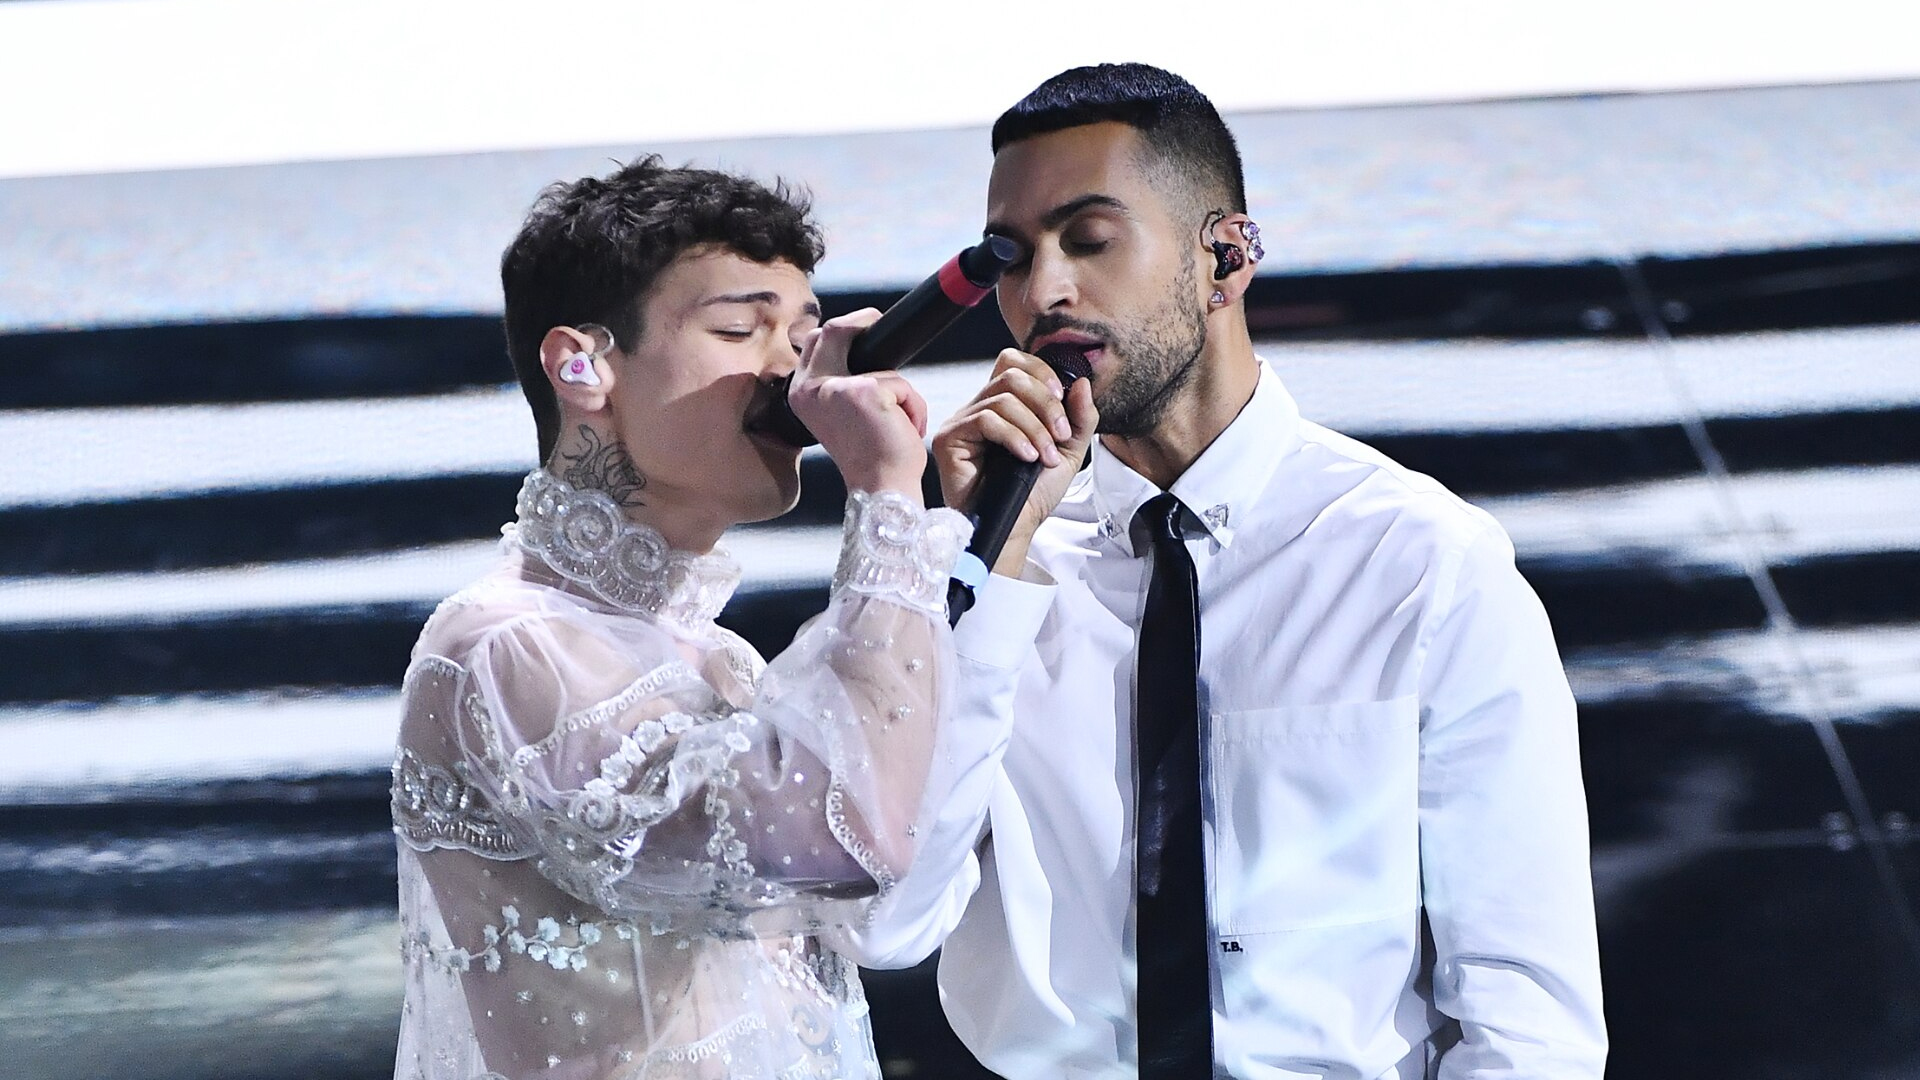 Conociendo a los artistas de Eurovisión 2022: Mahmood & Blanco